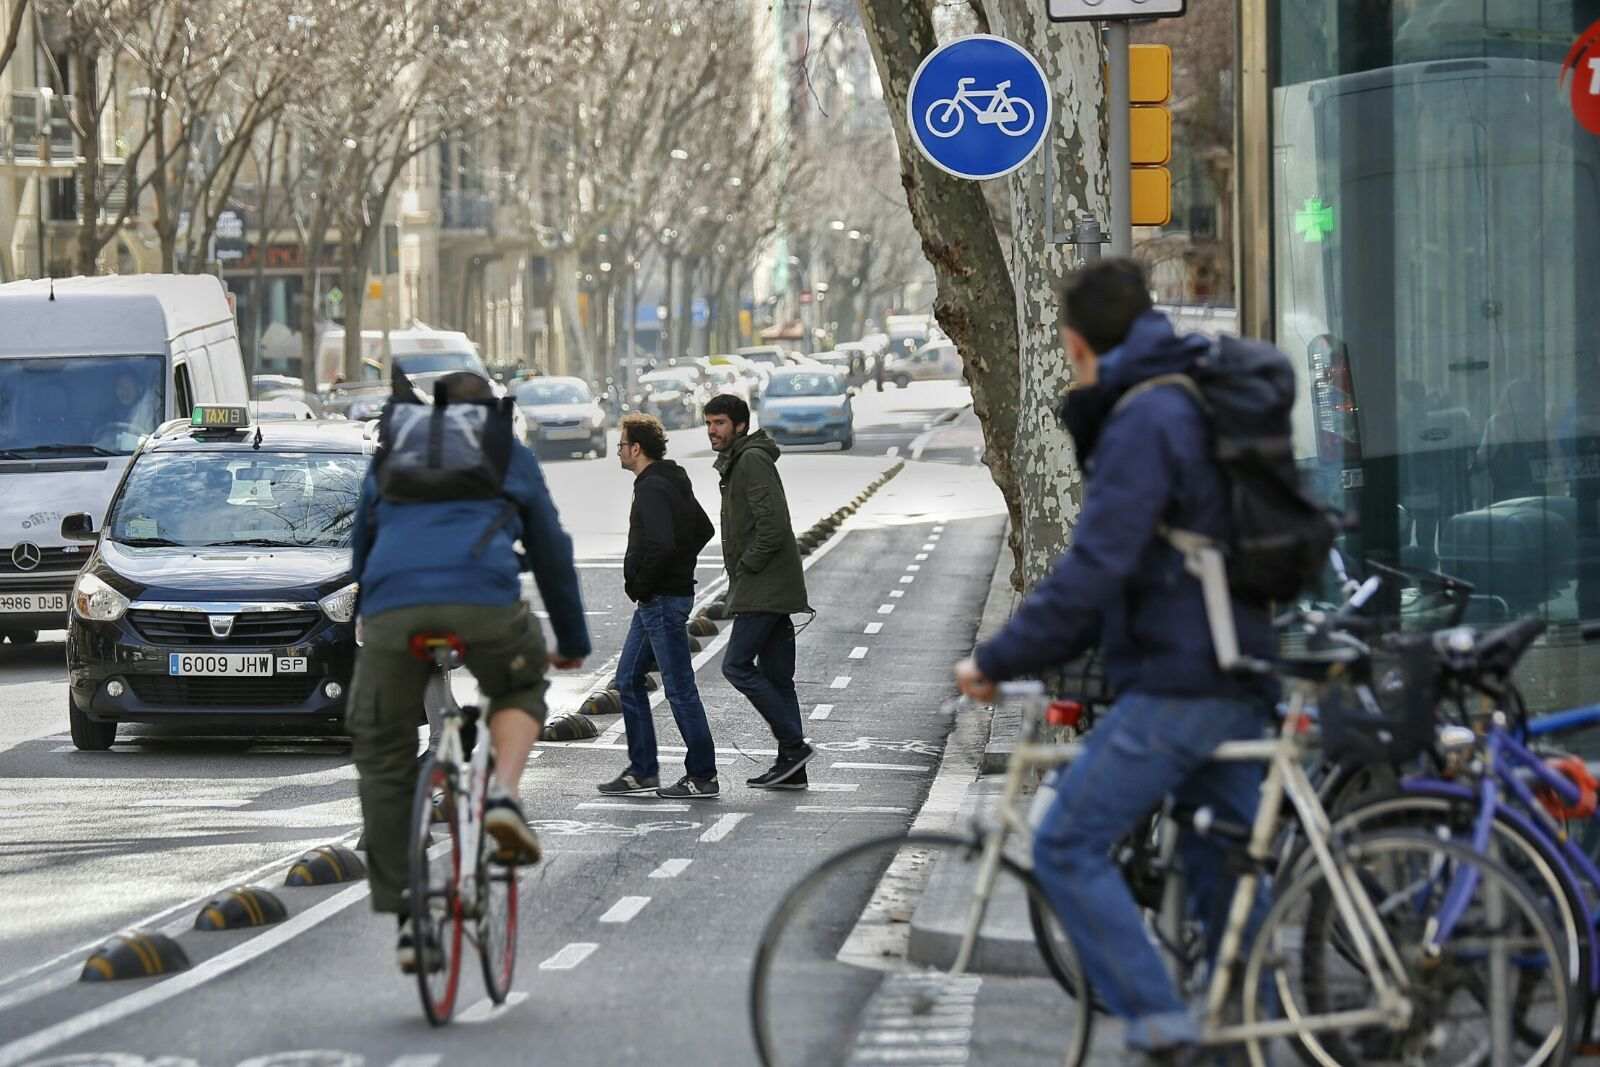 La Guàrdia Urbana de Barcelona hará controles de alcoholemia y drogas a ciclistas por Sant Joan